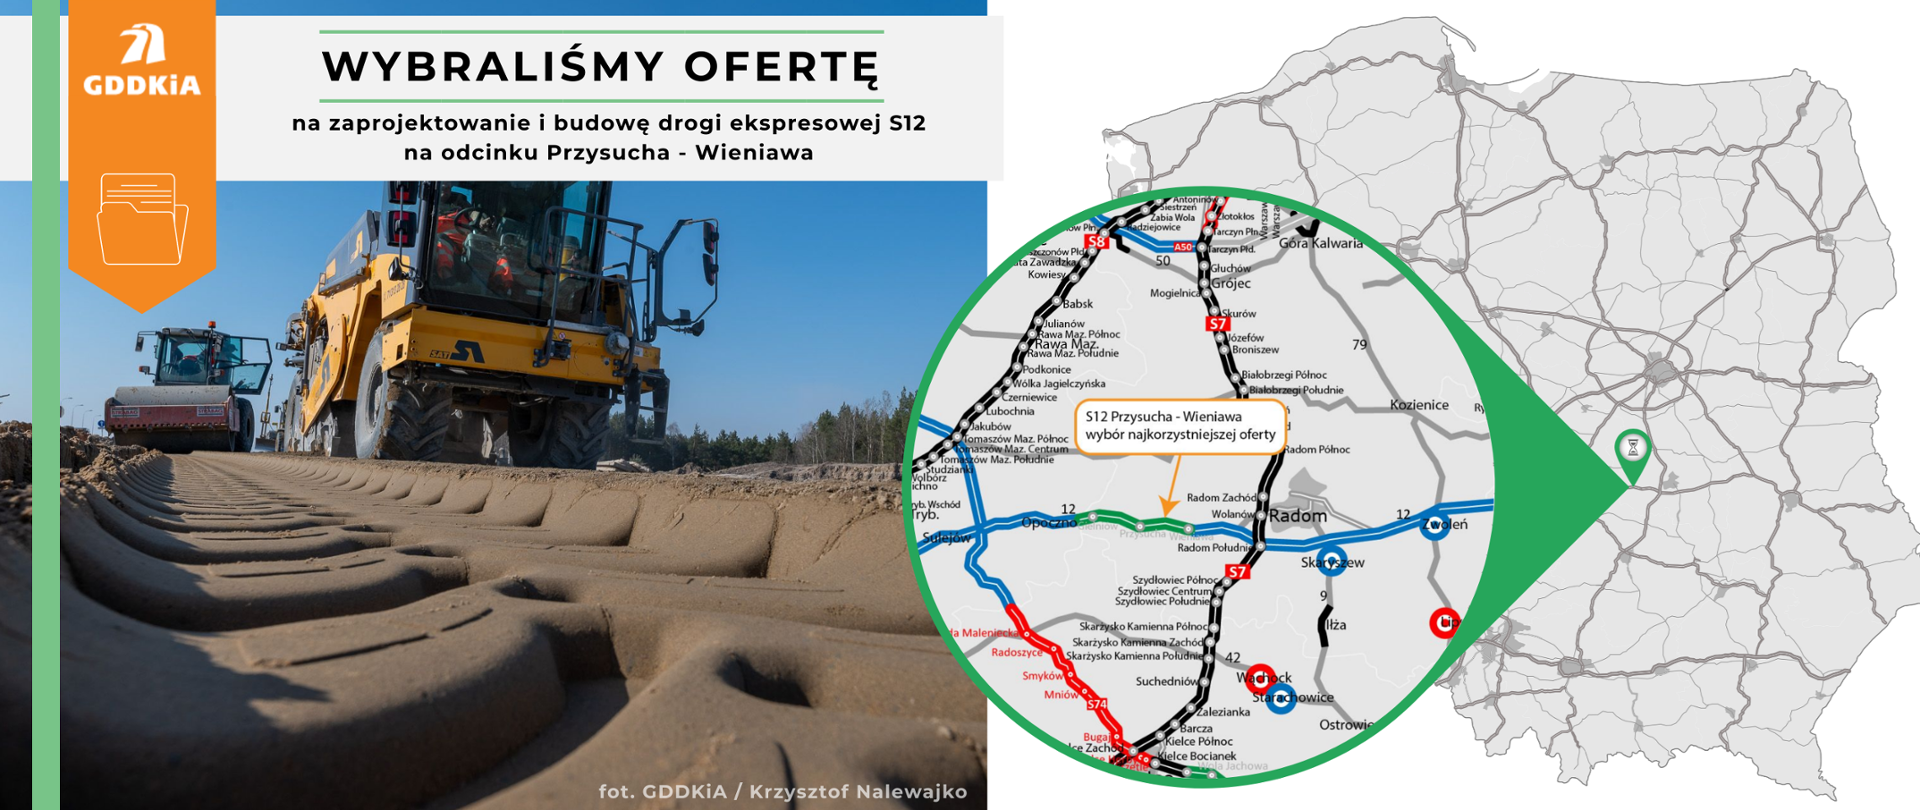 Infografika prezentująca informację o wyborze oferty na zaprojektowanie i budowę drogi ekspresowej S12 na odcinku Przysucha - Wieniawa